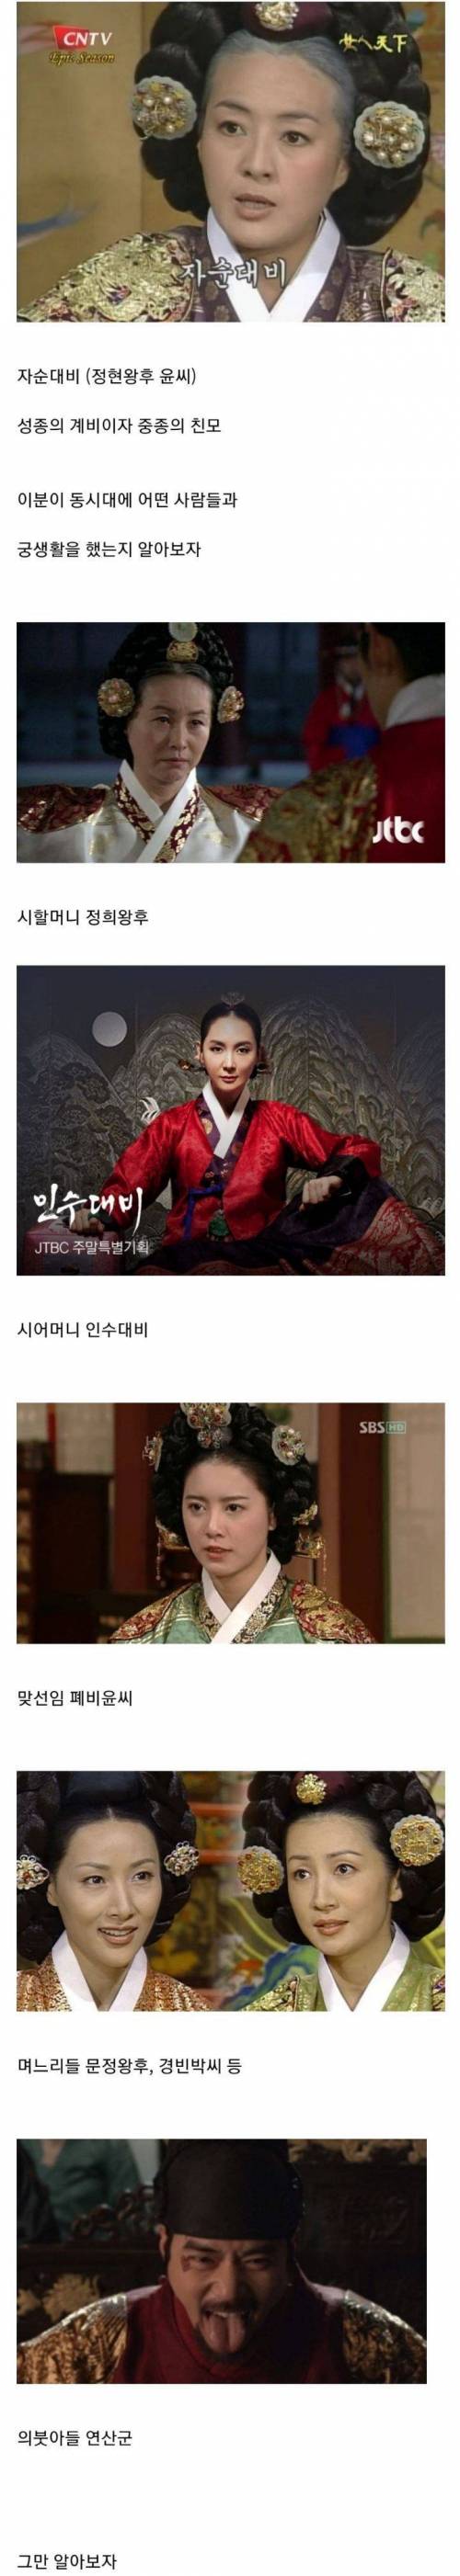 10 궁생활 난이도 역대급이었던 조선의 왕비.jpg